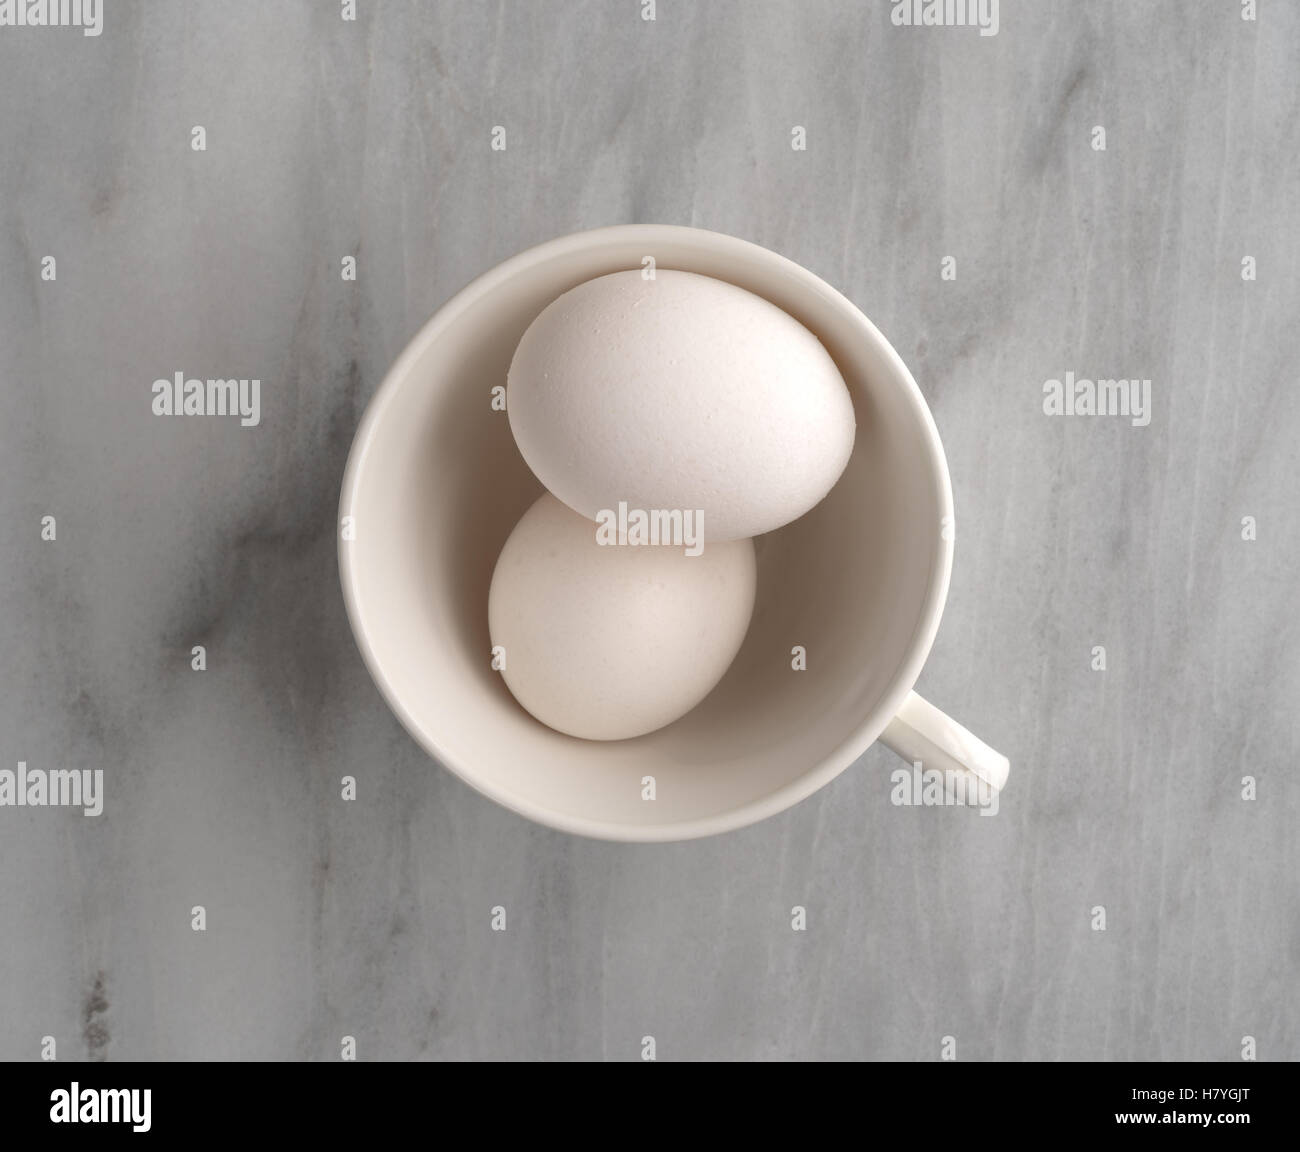 Vista superior de dos huevos en una taza blanca sobre una placa de corte de mármol gris. Foto de stock